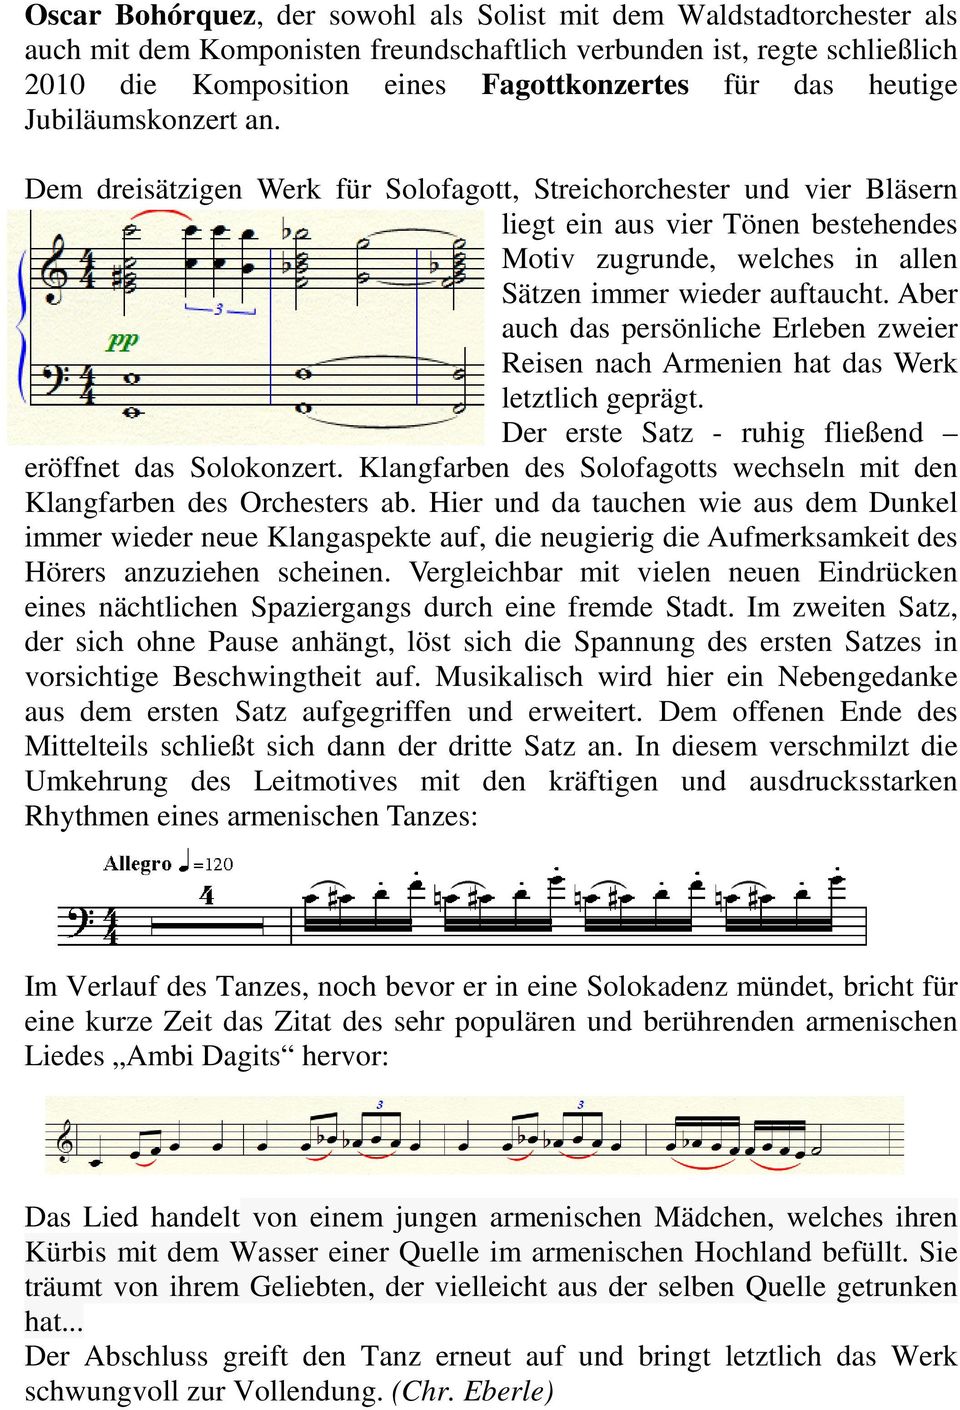 Dem dreisätzigen Werk für Solofagott, Streichorchester und vier Bläsern liegt ein aus vier Tönen bestehendes Motiv zugrunde, welches in allen Sätzen immer wieder auftaucht.